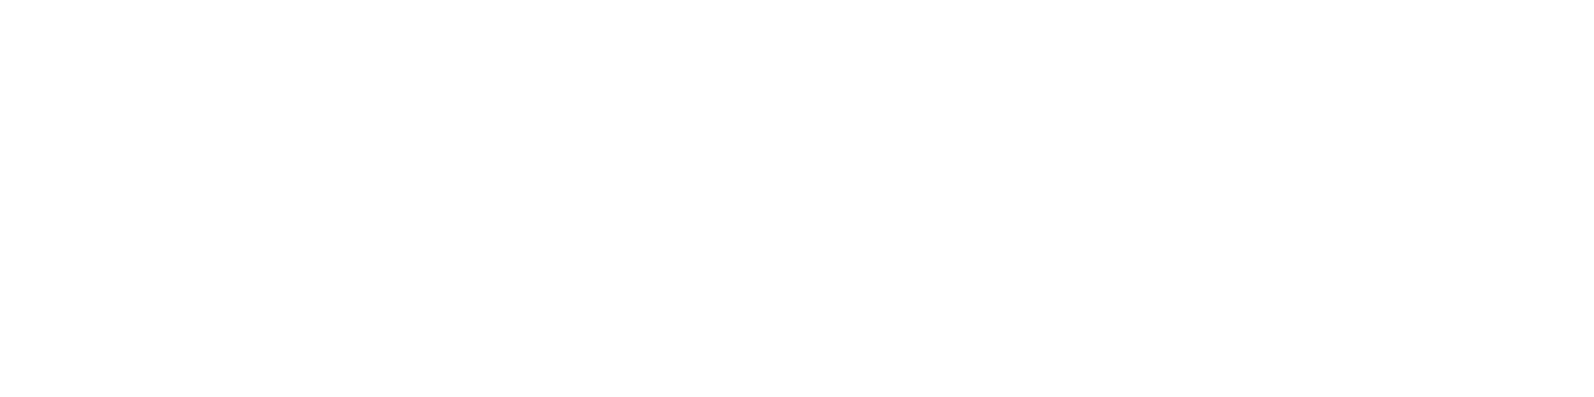 Plus500 logo pour fonds sombres (PNG transparent)